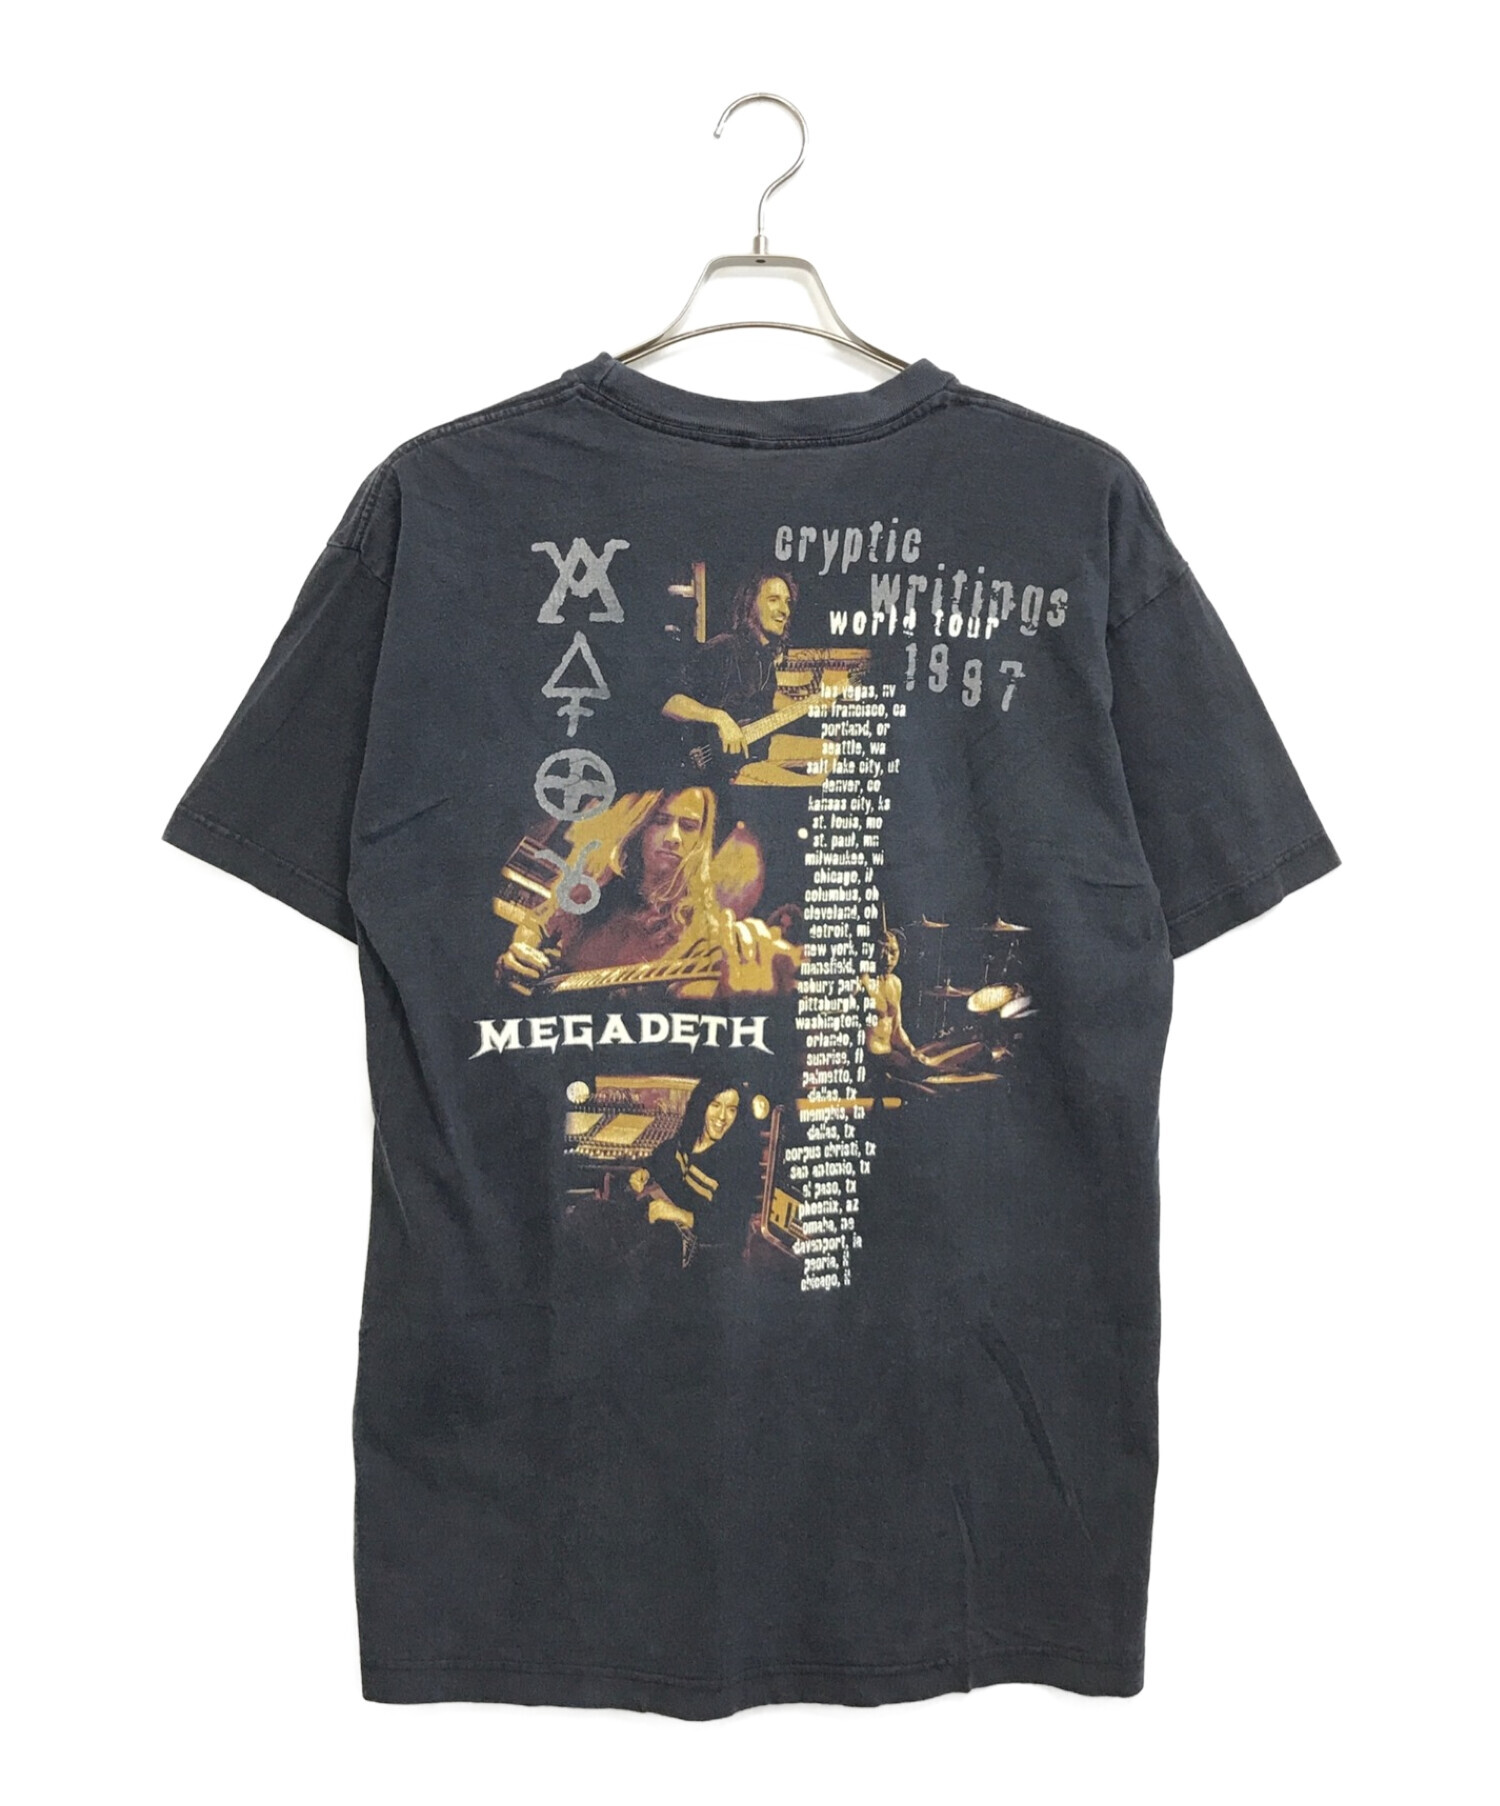 バンドTシャツ (バンドTシャツ) MEGADETH 90'sバンドTシャツ ブラック サイズ:L